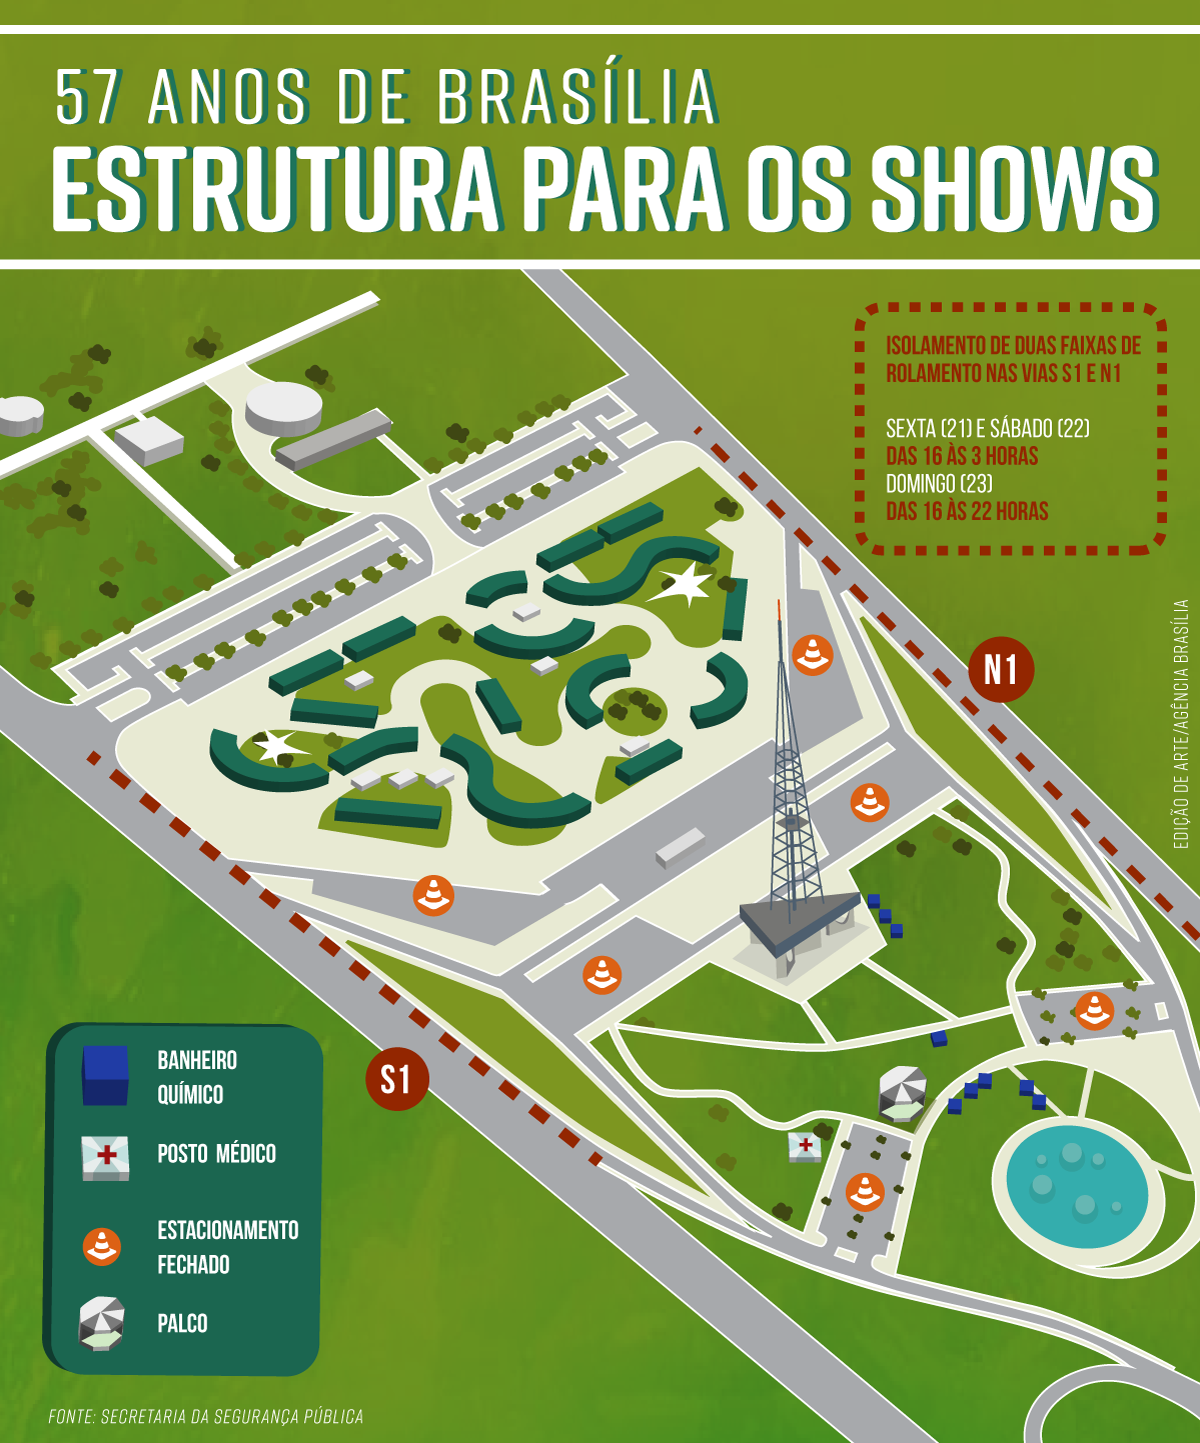 Mapa da estrutura para shows do aniversário de Brasília em 2017